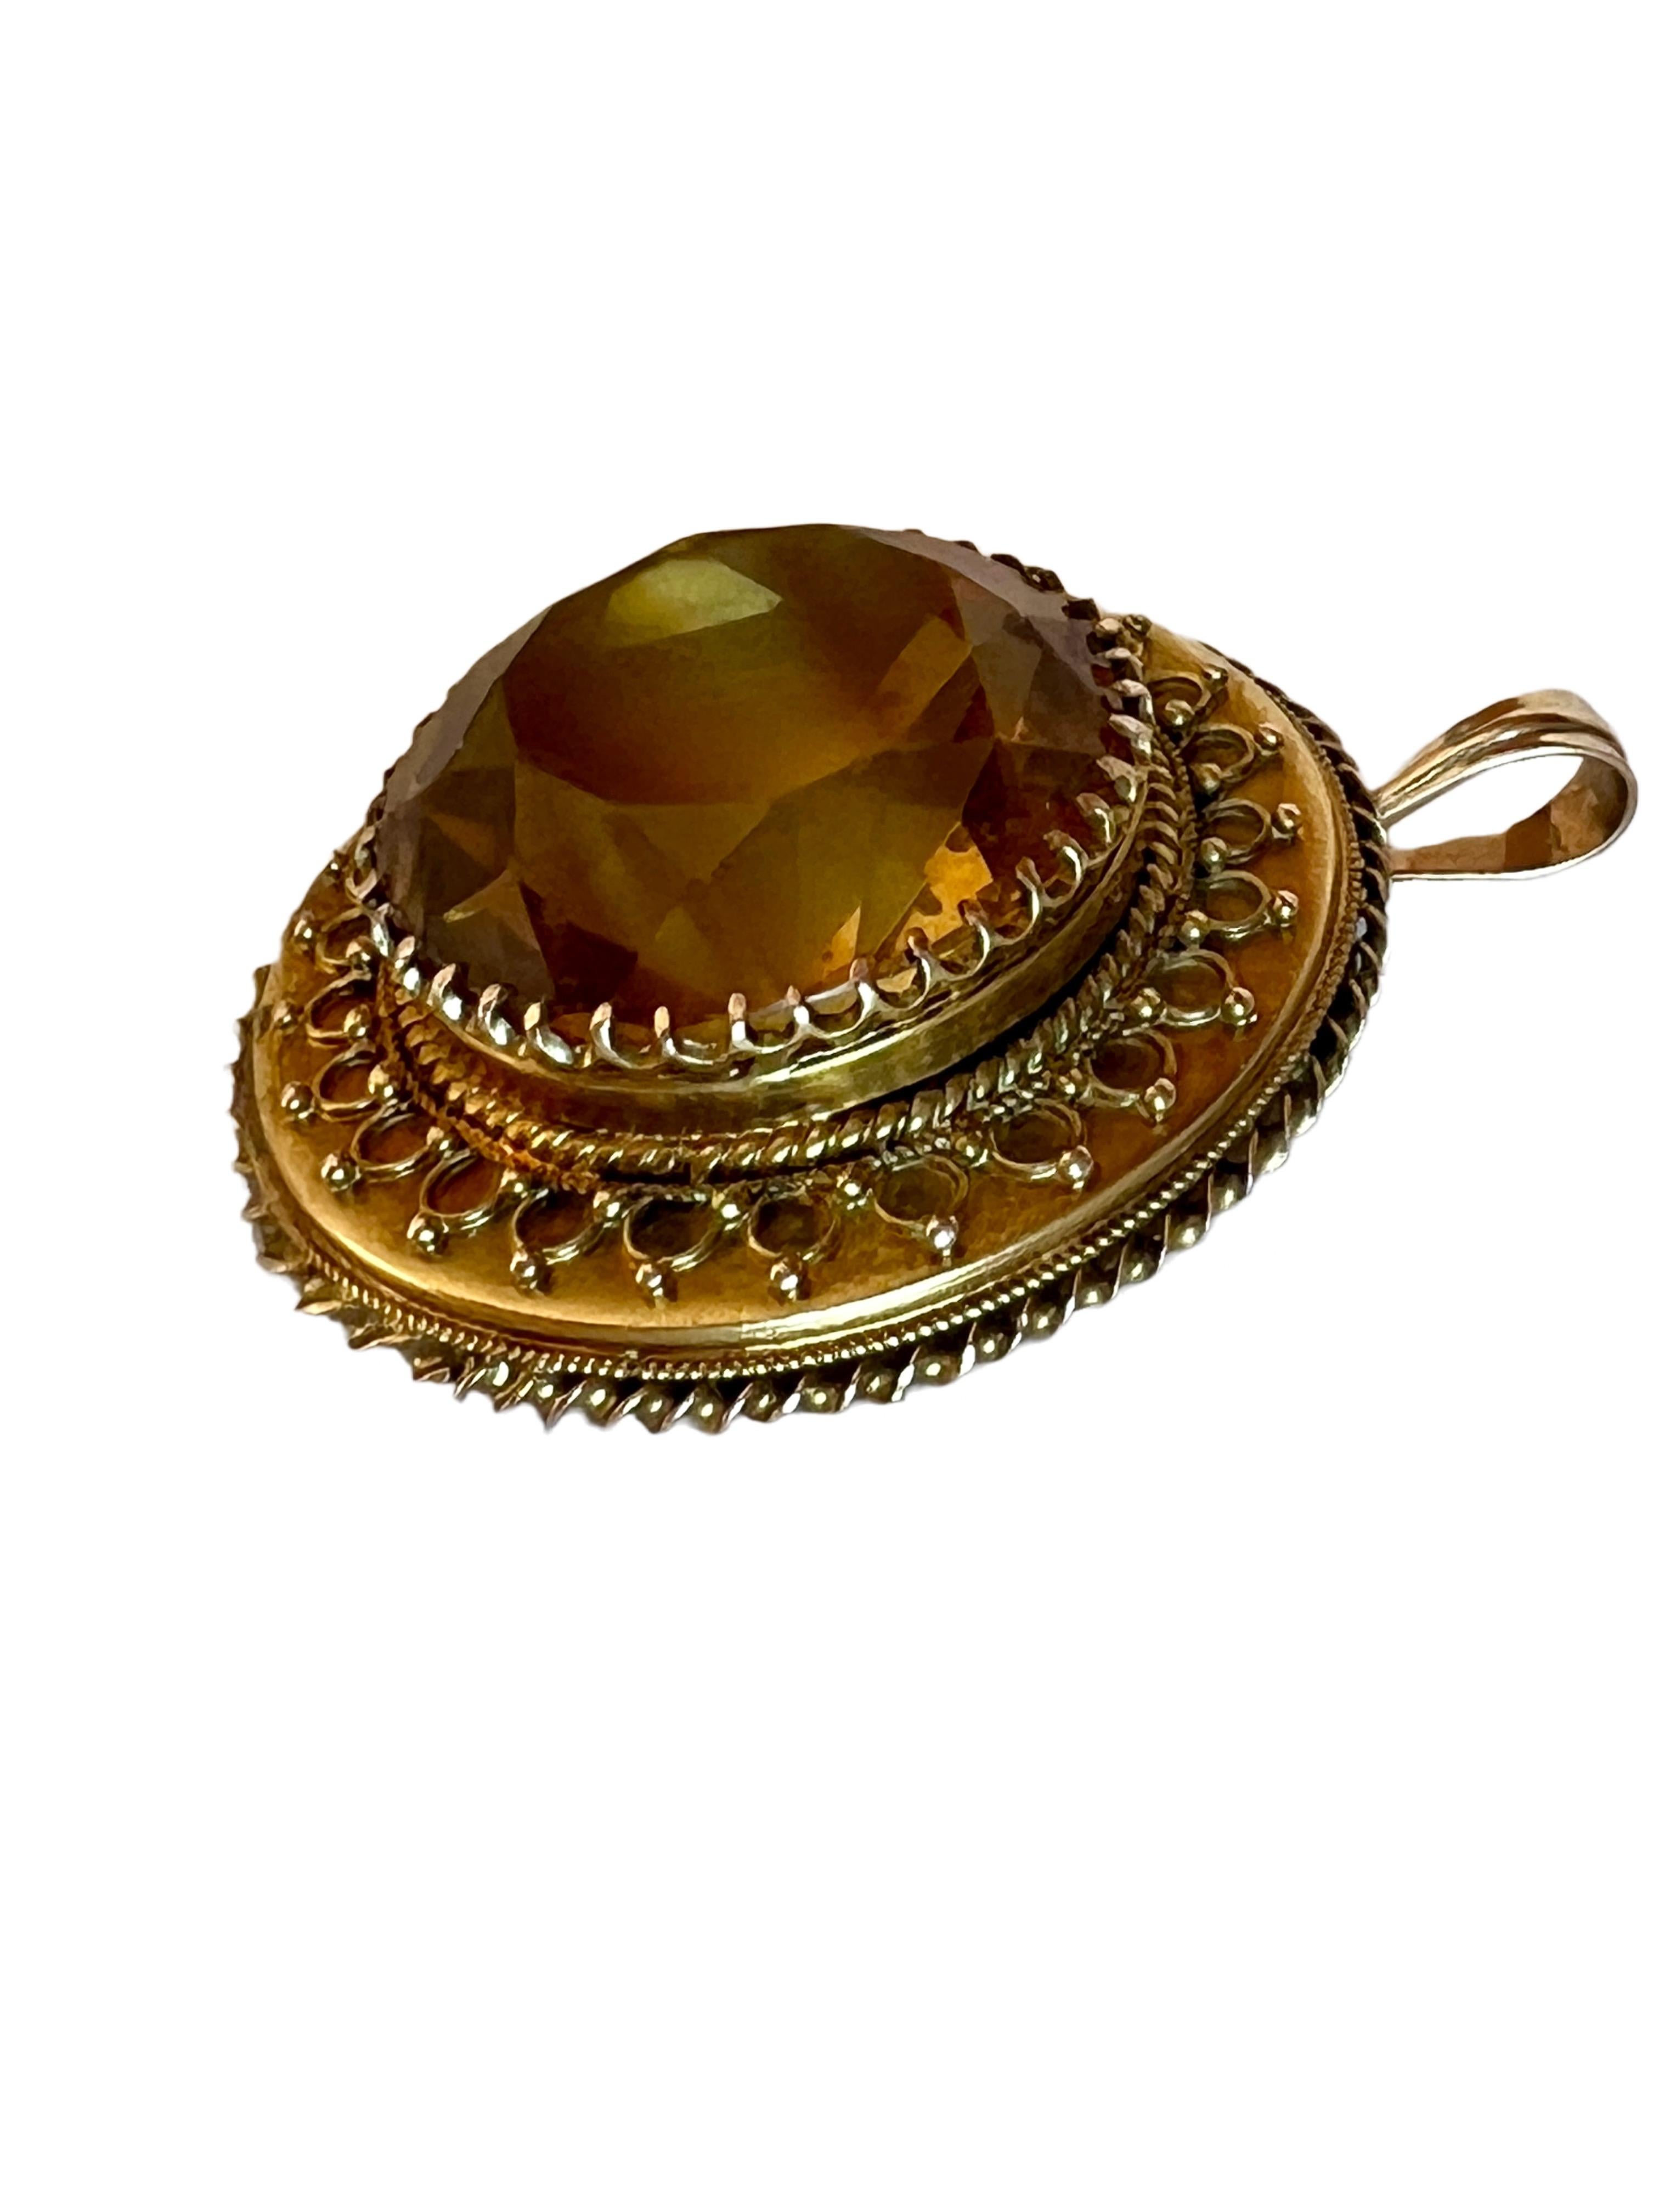 Large Antique 14k Yellow Gold Citrine Quartz Necklace Pendant Vintage Round 1